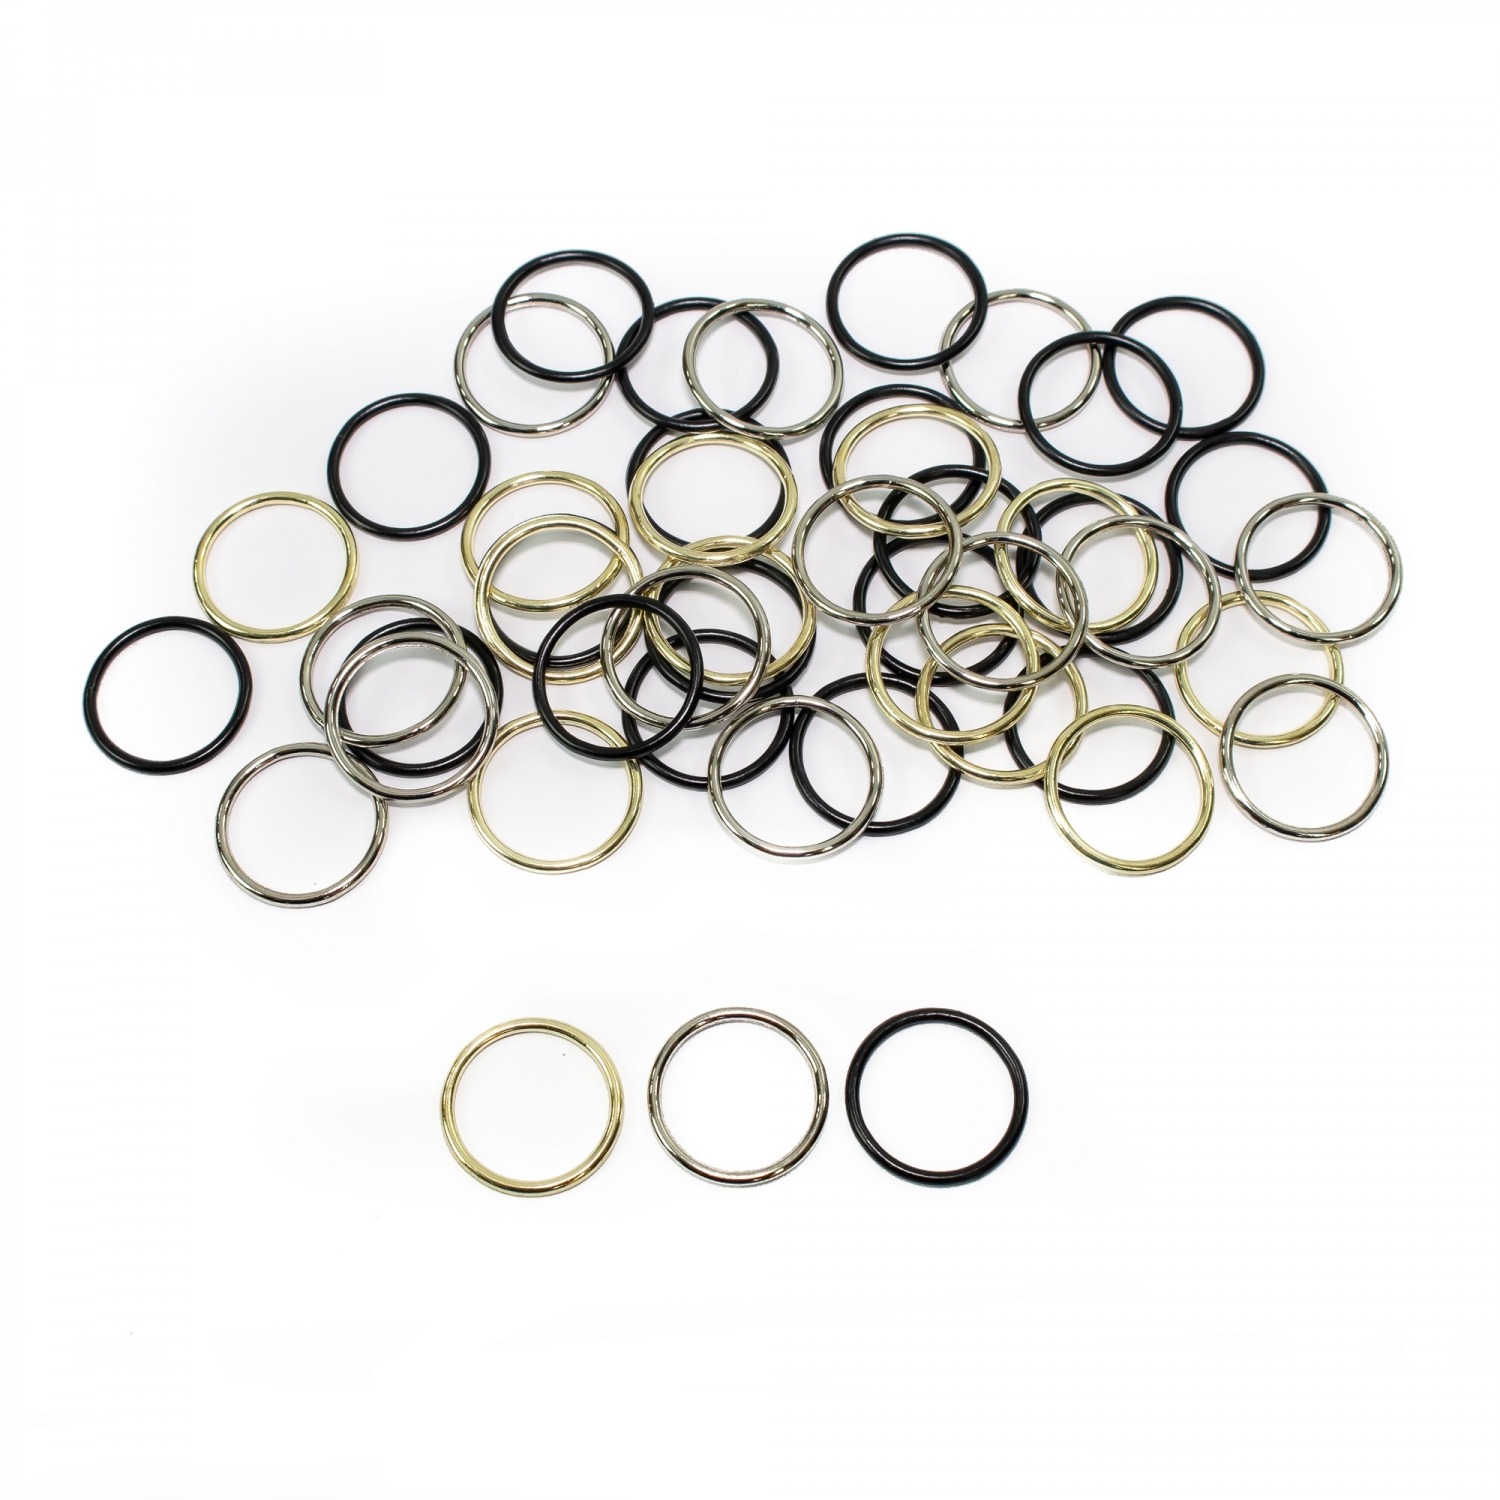 Metal Bra Rings, interior diameter 14 mm (100 pcs/bag)Cod: MH14